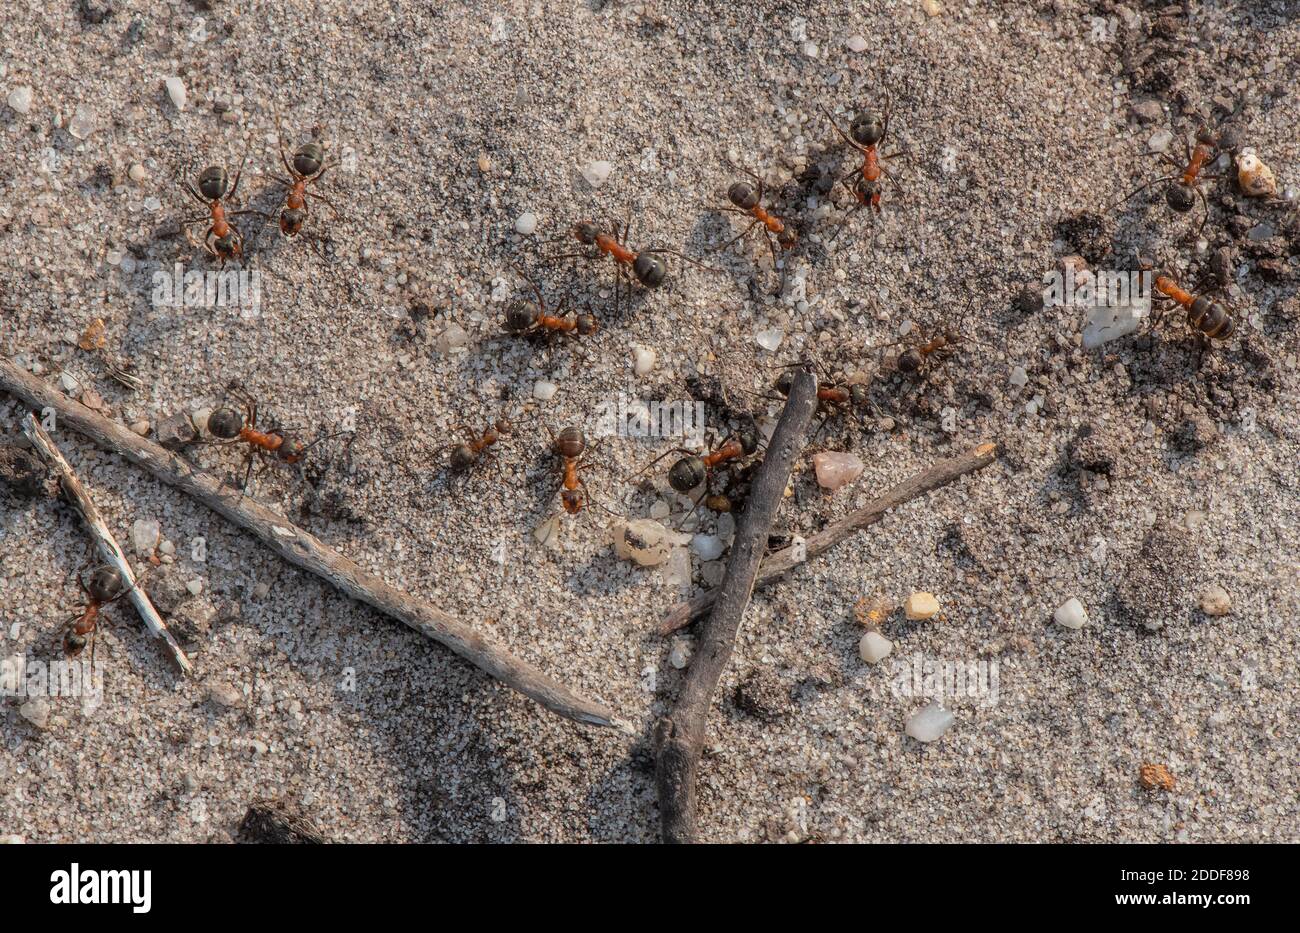 Southern Wood Ants, Formica rufa, seguendo il percorso di ritorno alla colonia sul bordo della brughiera. Foto Stock